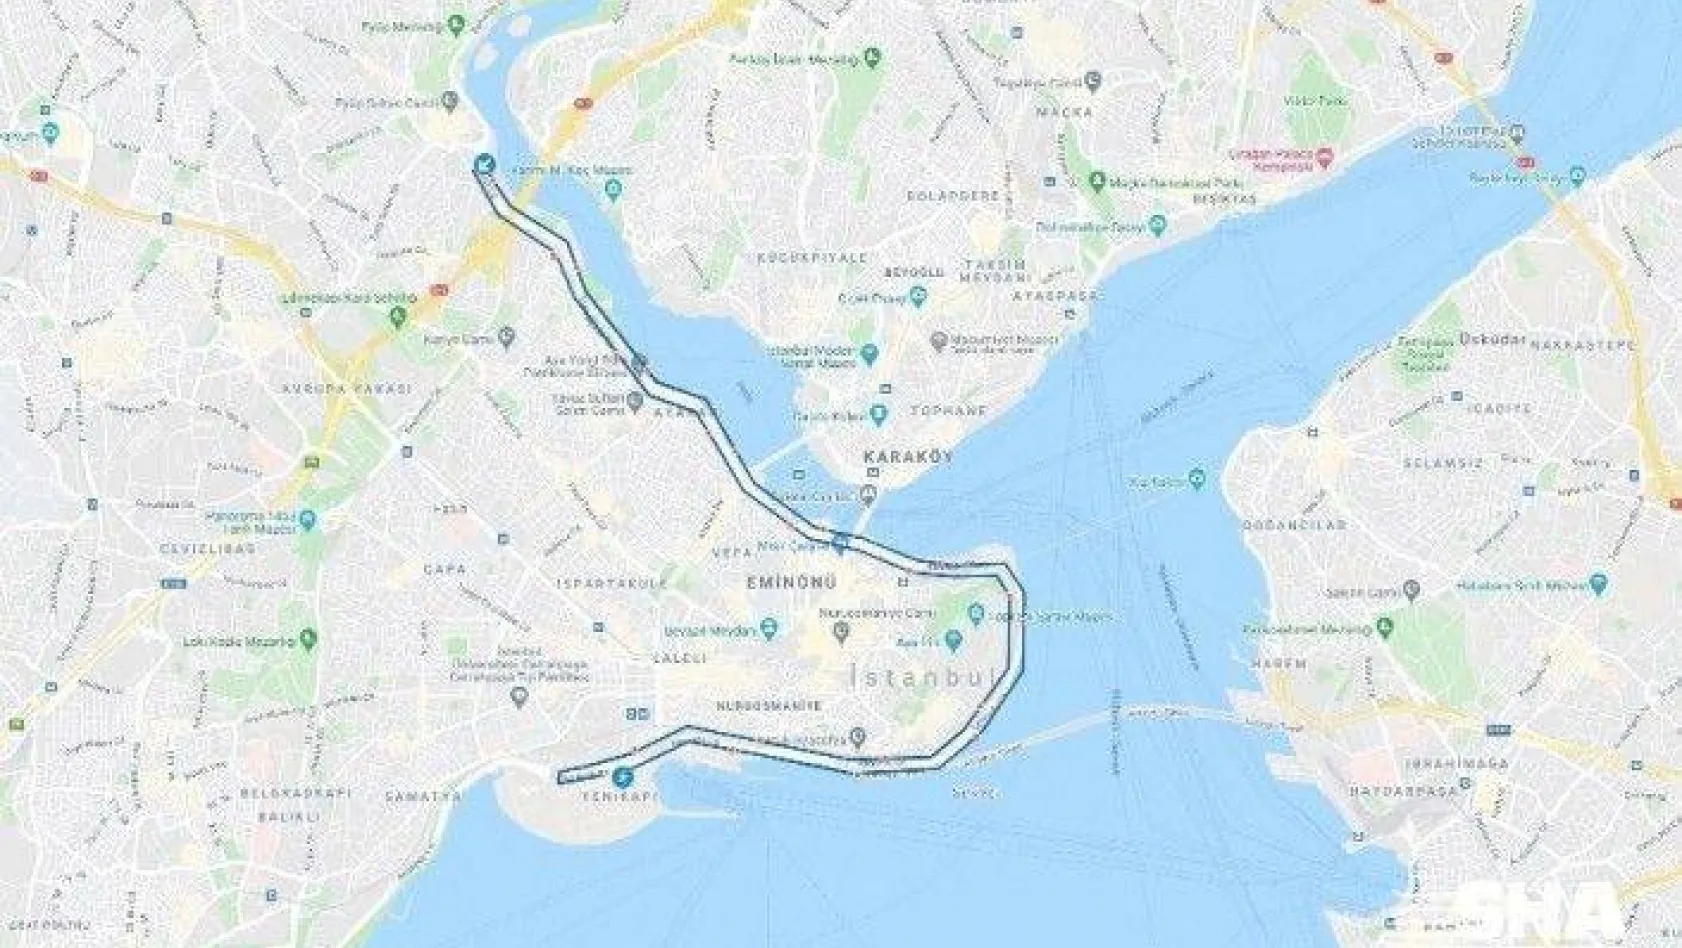 Vodafone 15. İstanbul Yarı Maratonu'nda yollar sporseverler için açılacak